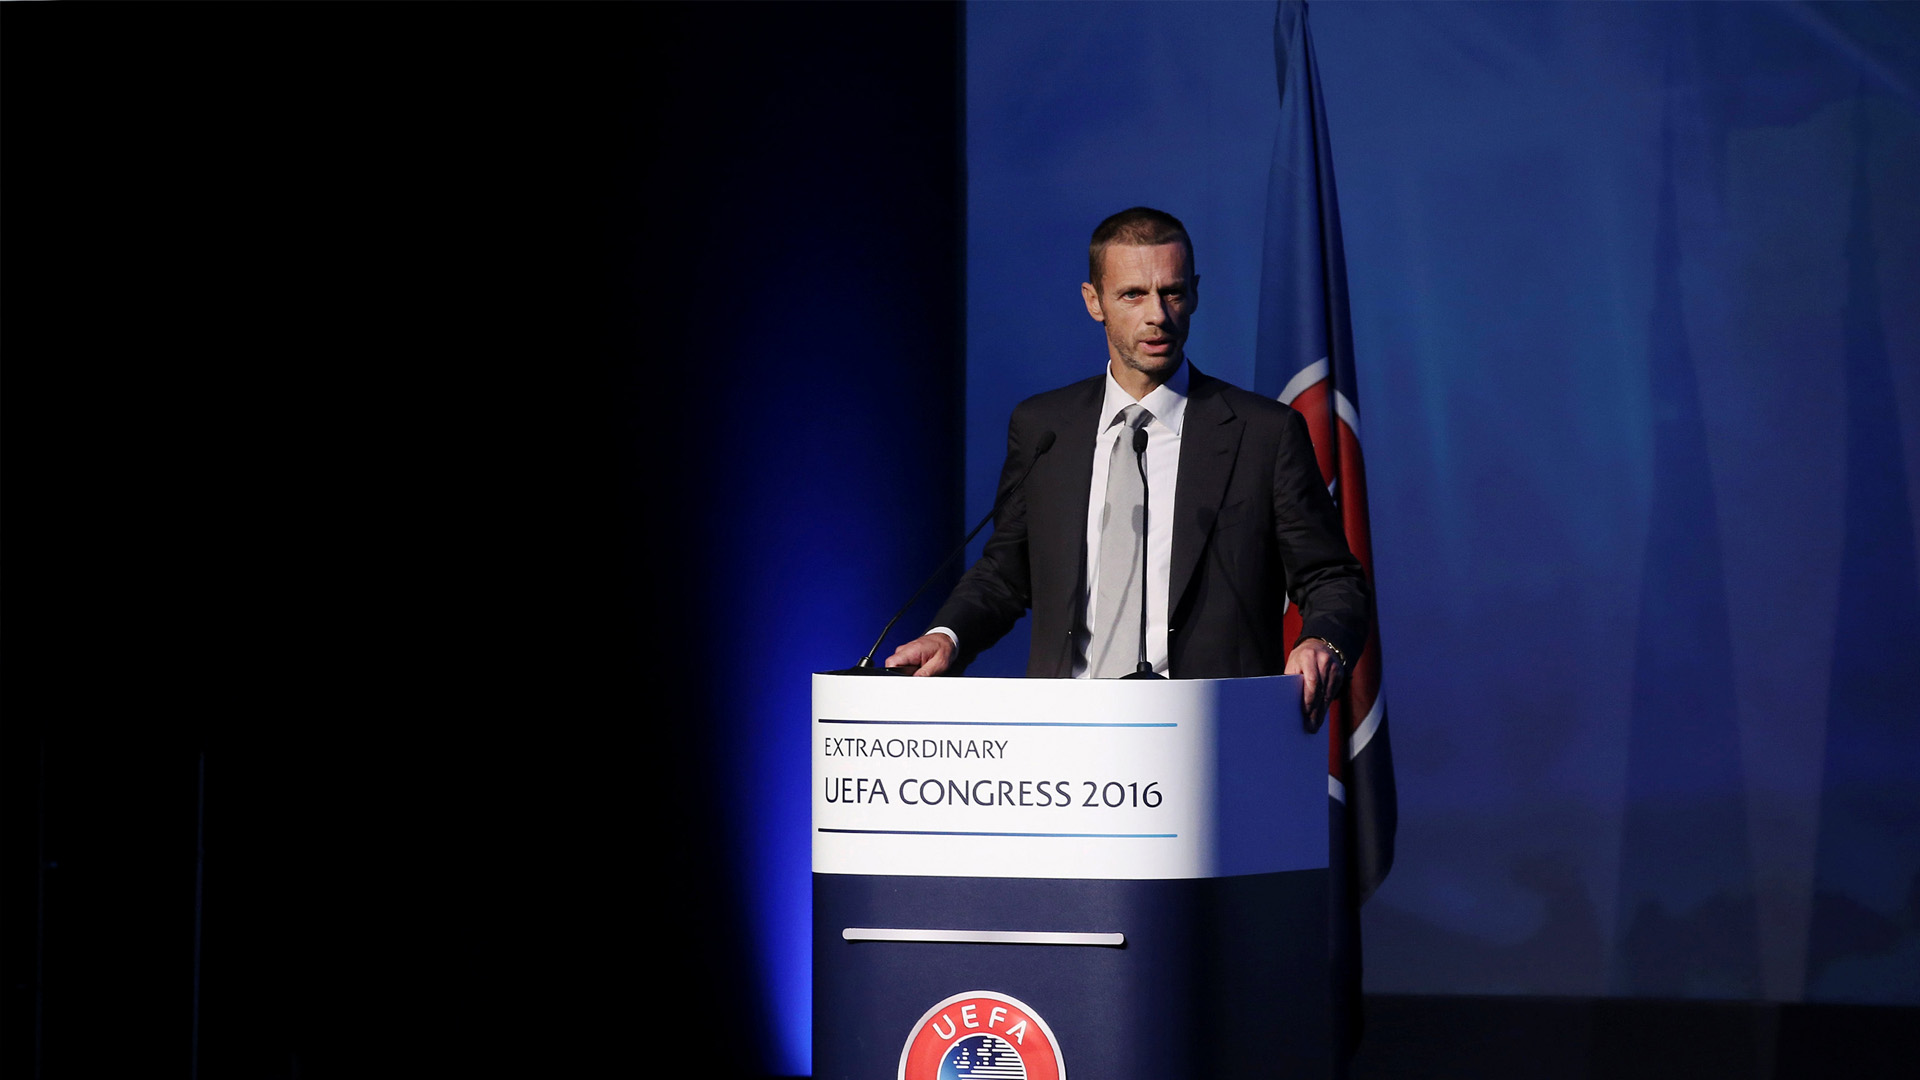 El nuevo Comité Ejecutivo de la UEFA, comandado por el recién electo Aleksander Ceferin, determinó esto en una cumbre en Atenas